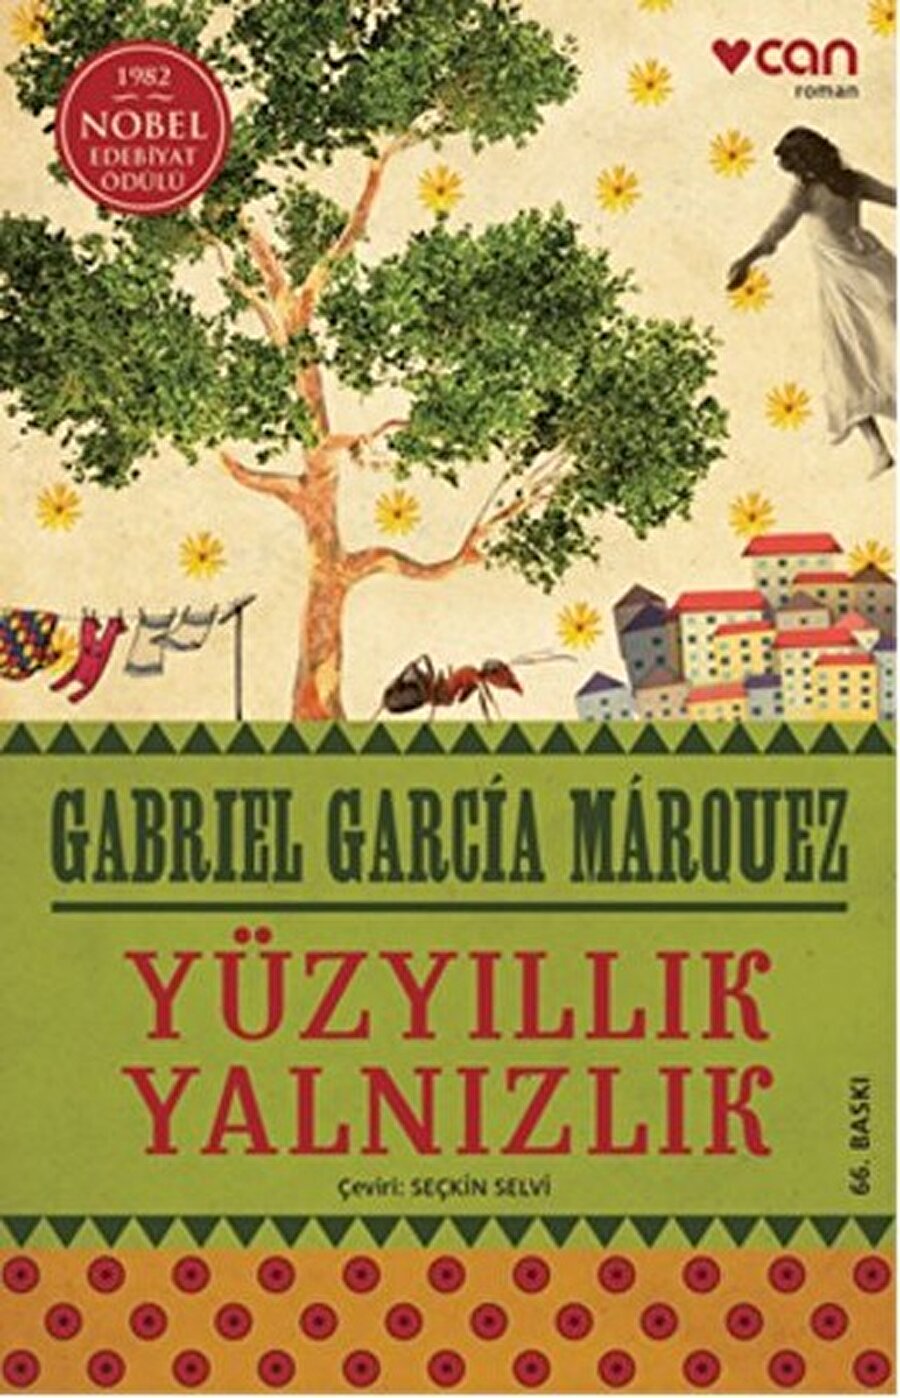 Yüzyıllık Yalnızlık

                                    
                                    
                                    Latin Amerika'nın en büyük edebiyatçılarından biri olan Gabriel Garcia Marquez tarafından yazılmış bir romandır. "İnsanın oturduğu toprakların altında ölüleri yoksa, o adam o toprağın insanı değildir." gibi etkileyici cümlelerin bulunduğu bu kitap birbirine benzer isimleri olan kocaman bir ailenin hikayesini konu alır. Yazar bu kitabı yazarken büyükannesinin ona anlattığı hikayelerden esinlendi. Büyükannesi hakkında "Büyükannem, en acımasız şeyleri, kılını bile kıpırdatmadan, sanki yalnızca gördüğü olağan şeylermiş gibi anlatırdı bana" diyen Marquez kitabı da tam olarak bu şekilde yazdı. Marquez aynı zamanda büyülü gerçekçi akımın kurucularından birisi olarak adını edebiyat dünyasına altın harflerle yazdırmıştır. 

                                
                                
                                